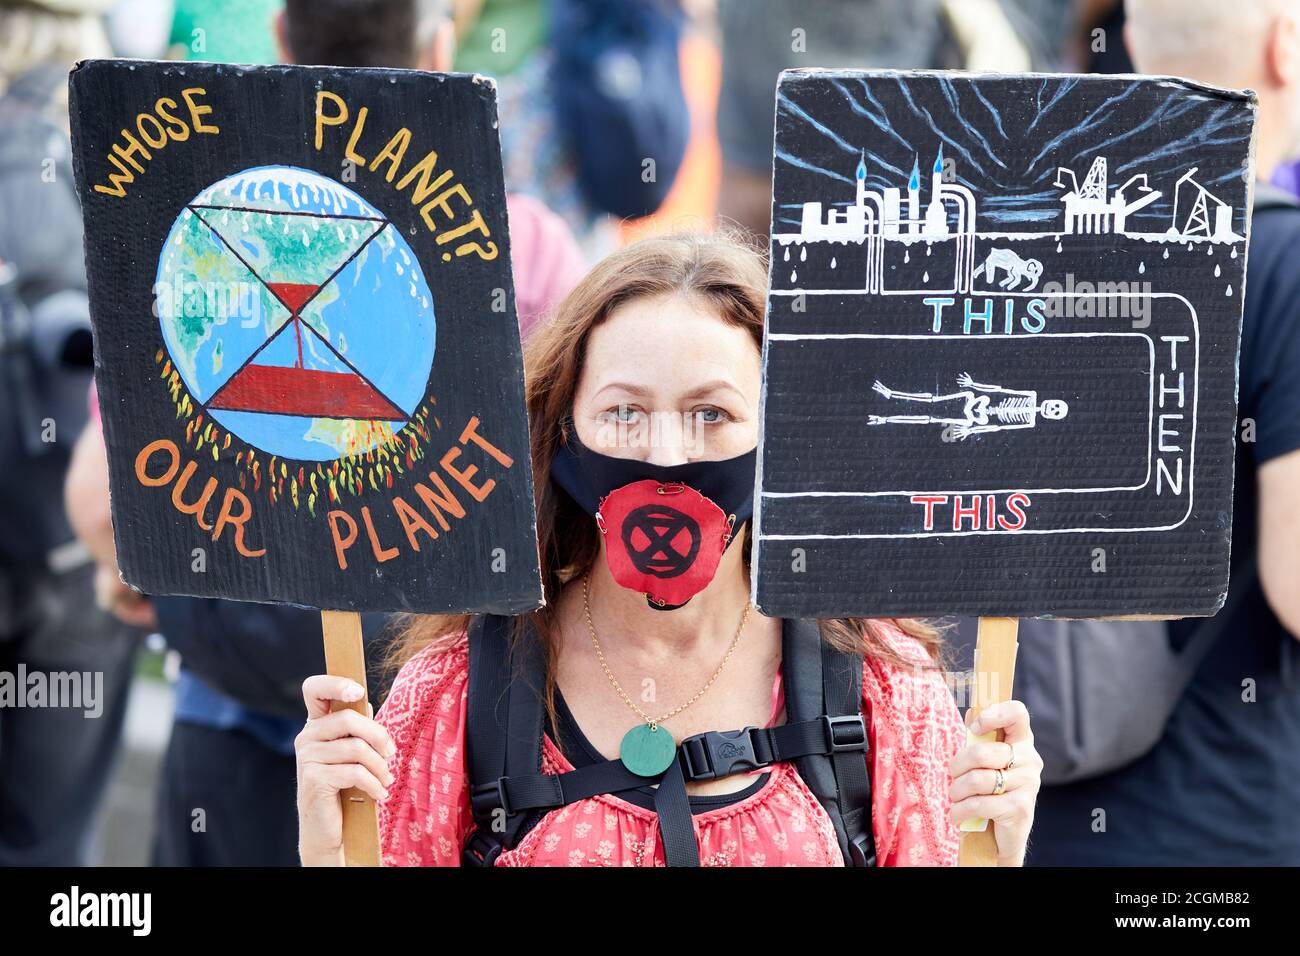 Londres, Reino Unido. - 10 Sept 2020: Un protestor sostiene pancartas durante una protesta del grupo extinción Rebelión en la Plaza del Parlamento. Foto de stock